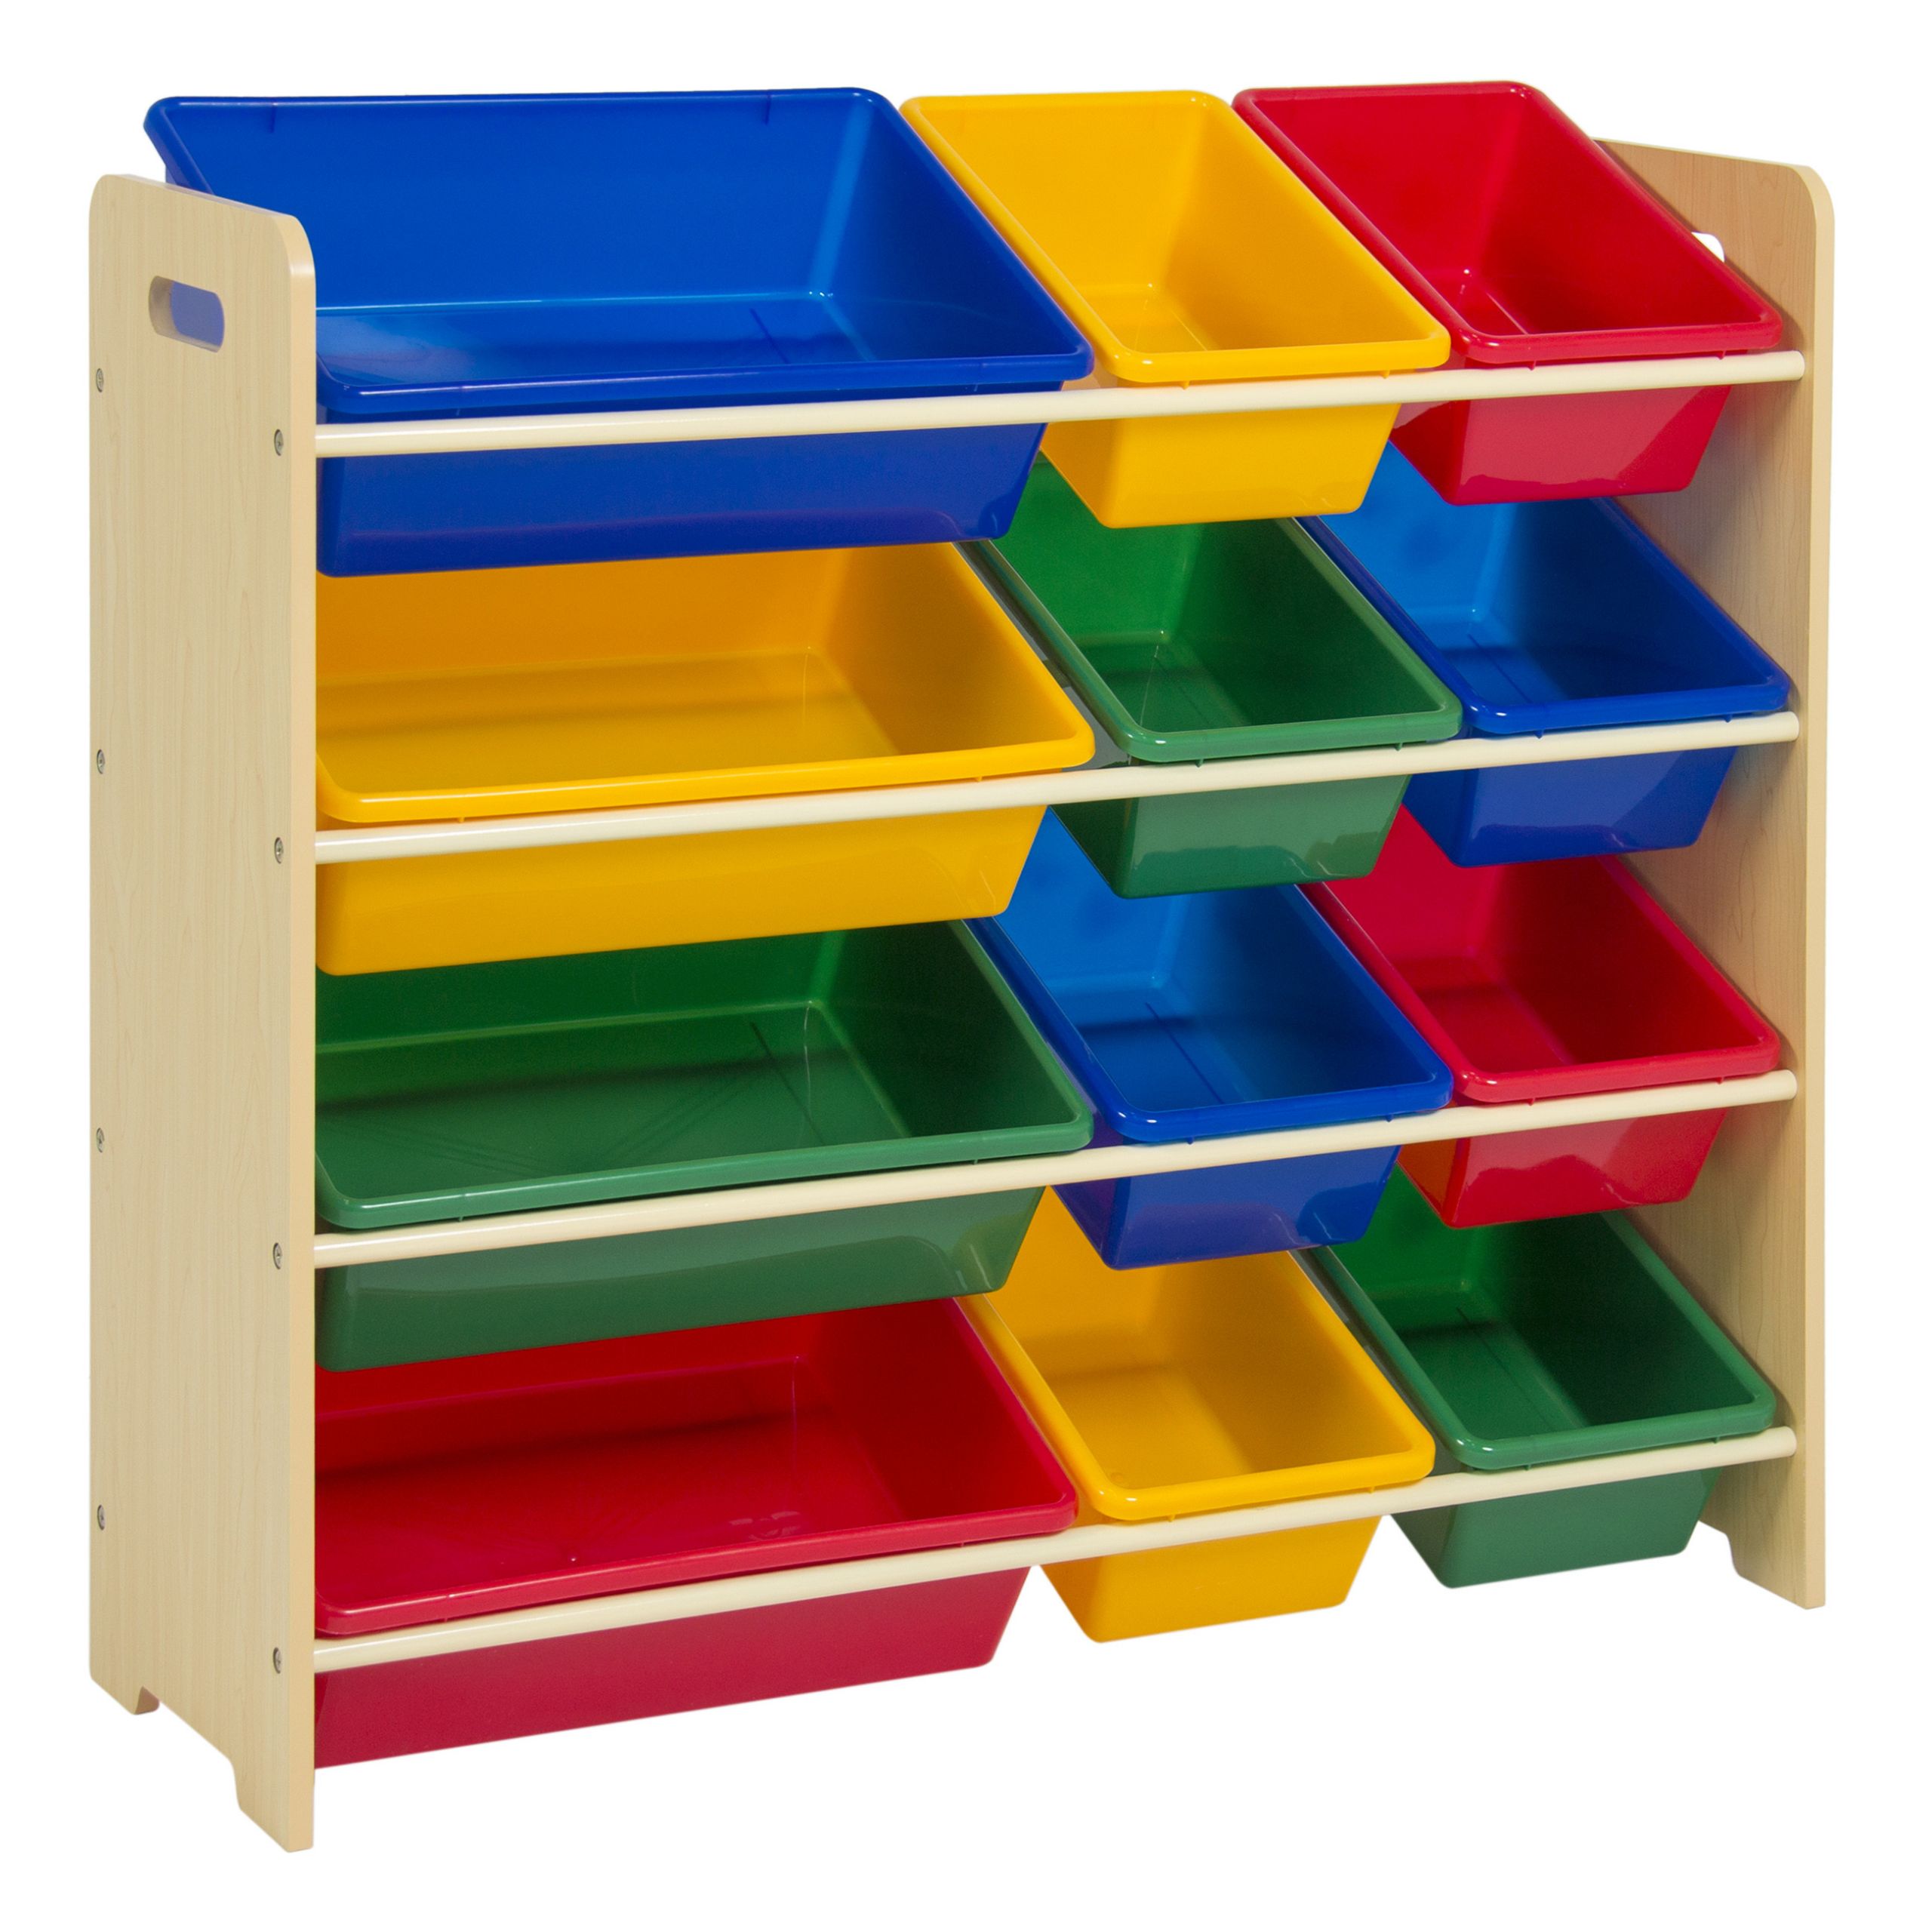 Kids Storage Bins
 Toy Bin Organizer Kids Childrens Storage Box Playroom